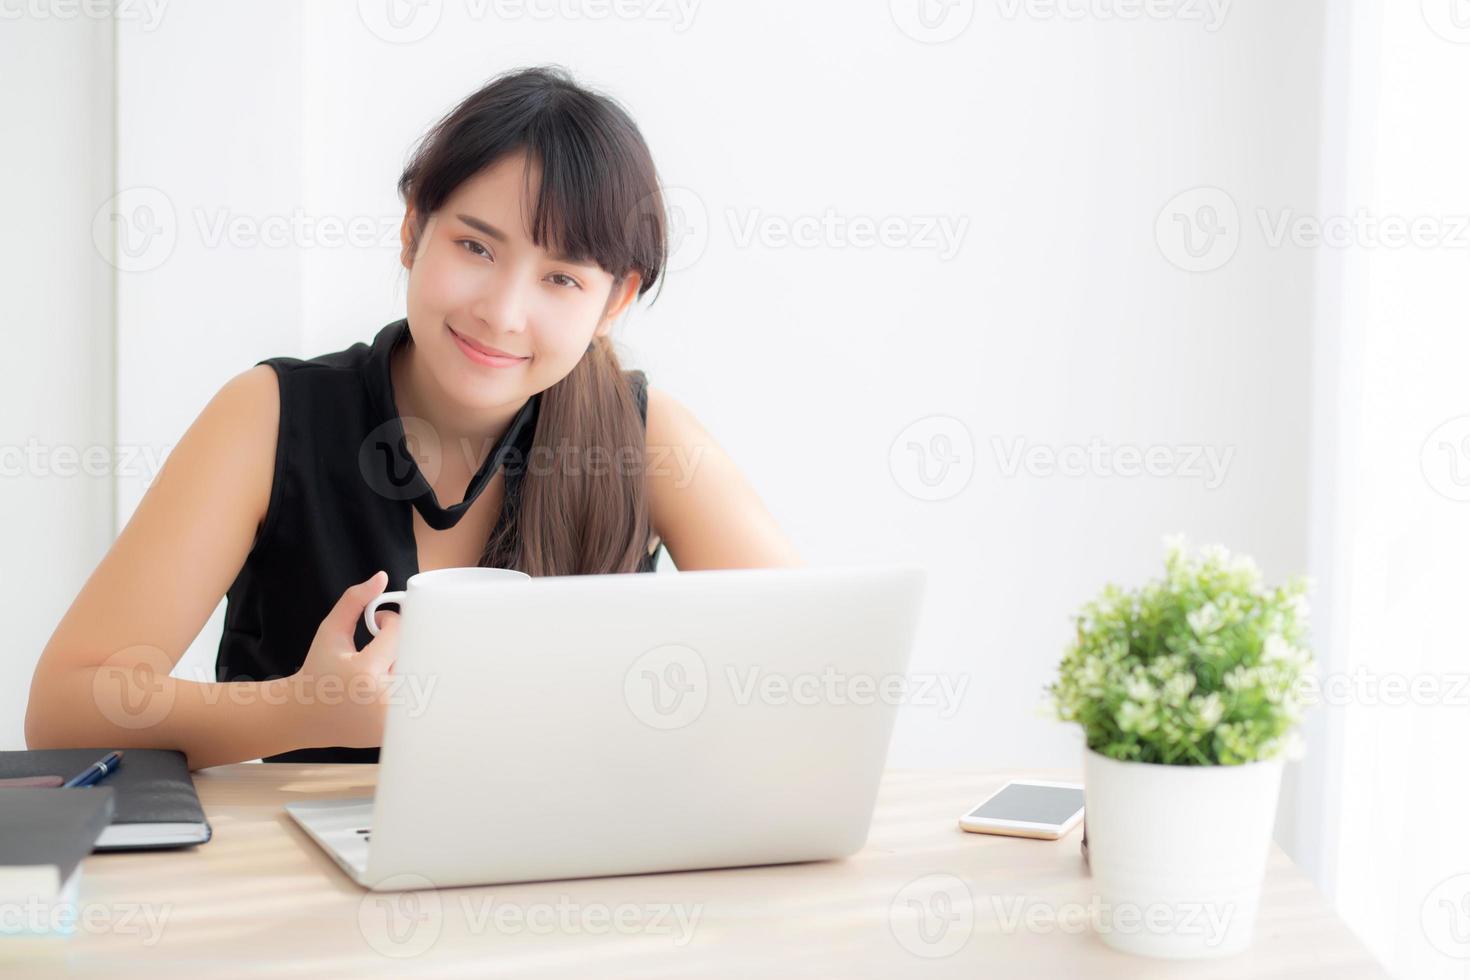 bella giovane donna asiatica sorridente lavorando e digitando sul computer portatile in ufficio con professionista, ragazza che utilizza il taccuino che controlla e-mail o social network, concetto di business e stile di vita. foto